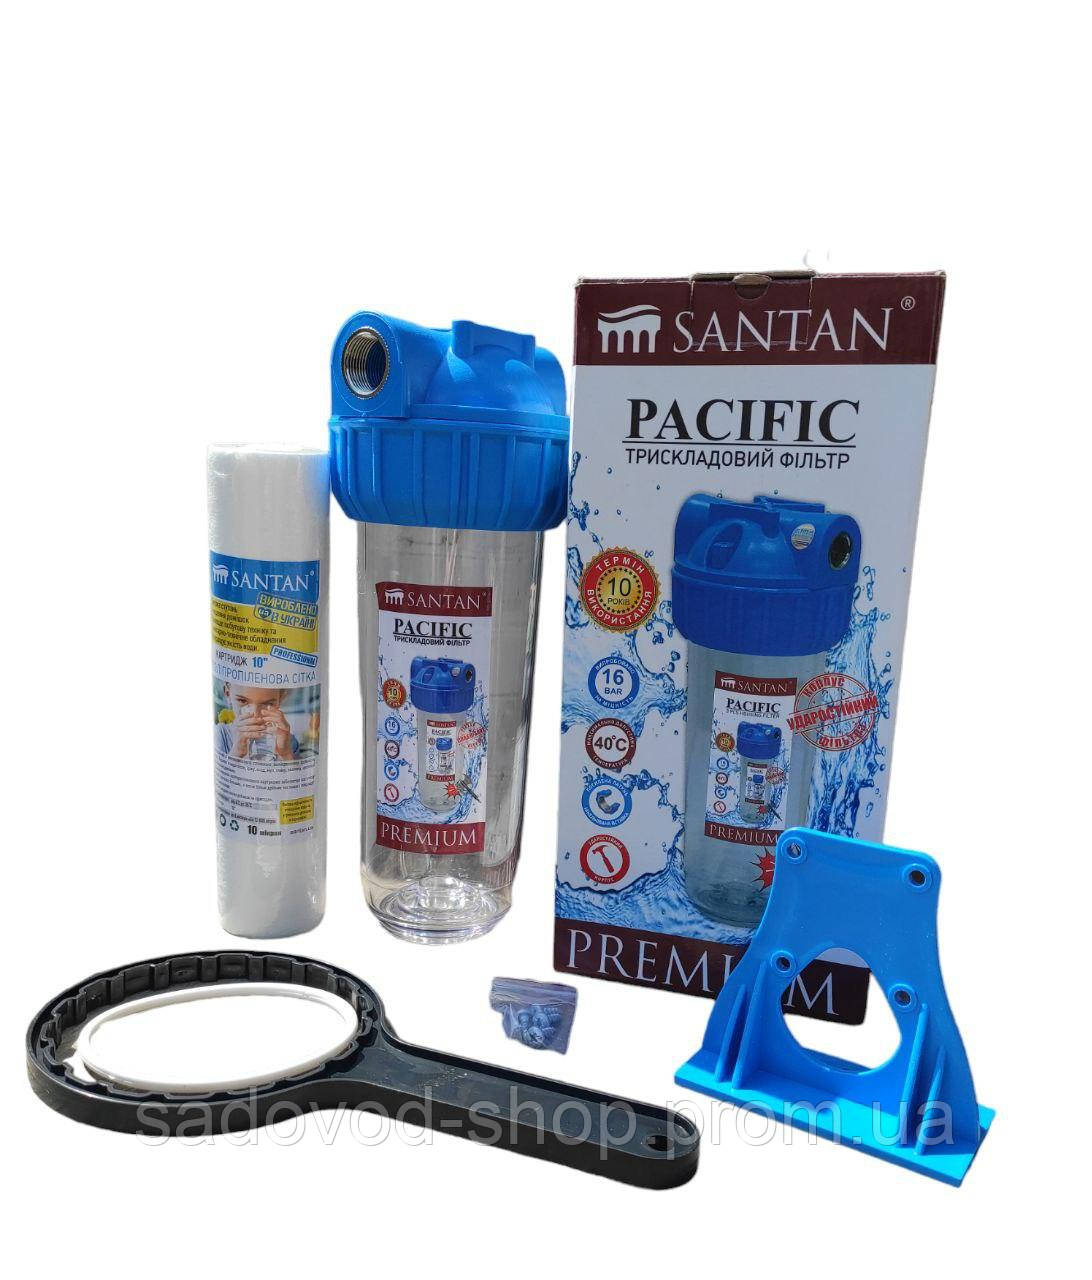 Колба ( фільтр ) для очищення води Santan 3PS « Pacific » 16 bar . Підключення 3/4» c картриджем ( PL)